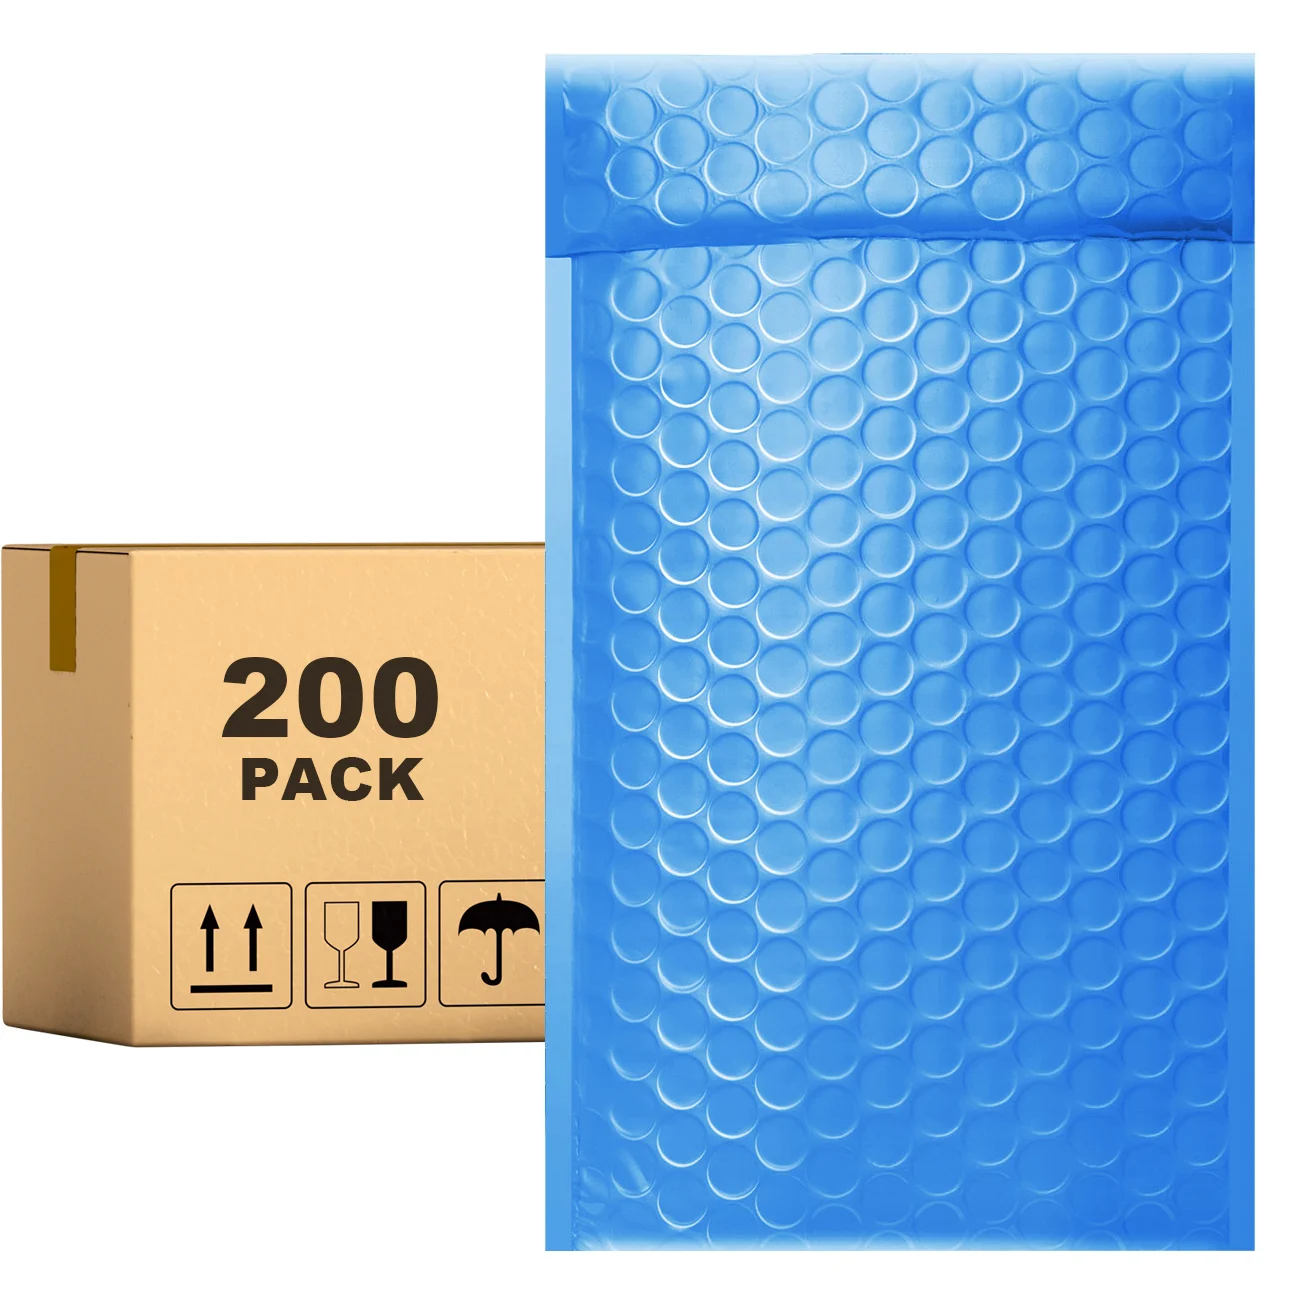 

Поли-пузырчатые конверты PACKAPRO 7x10 синие мягкие конверты 200 шт. для упаковки, отправки, доставки...